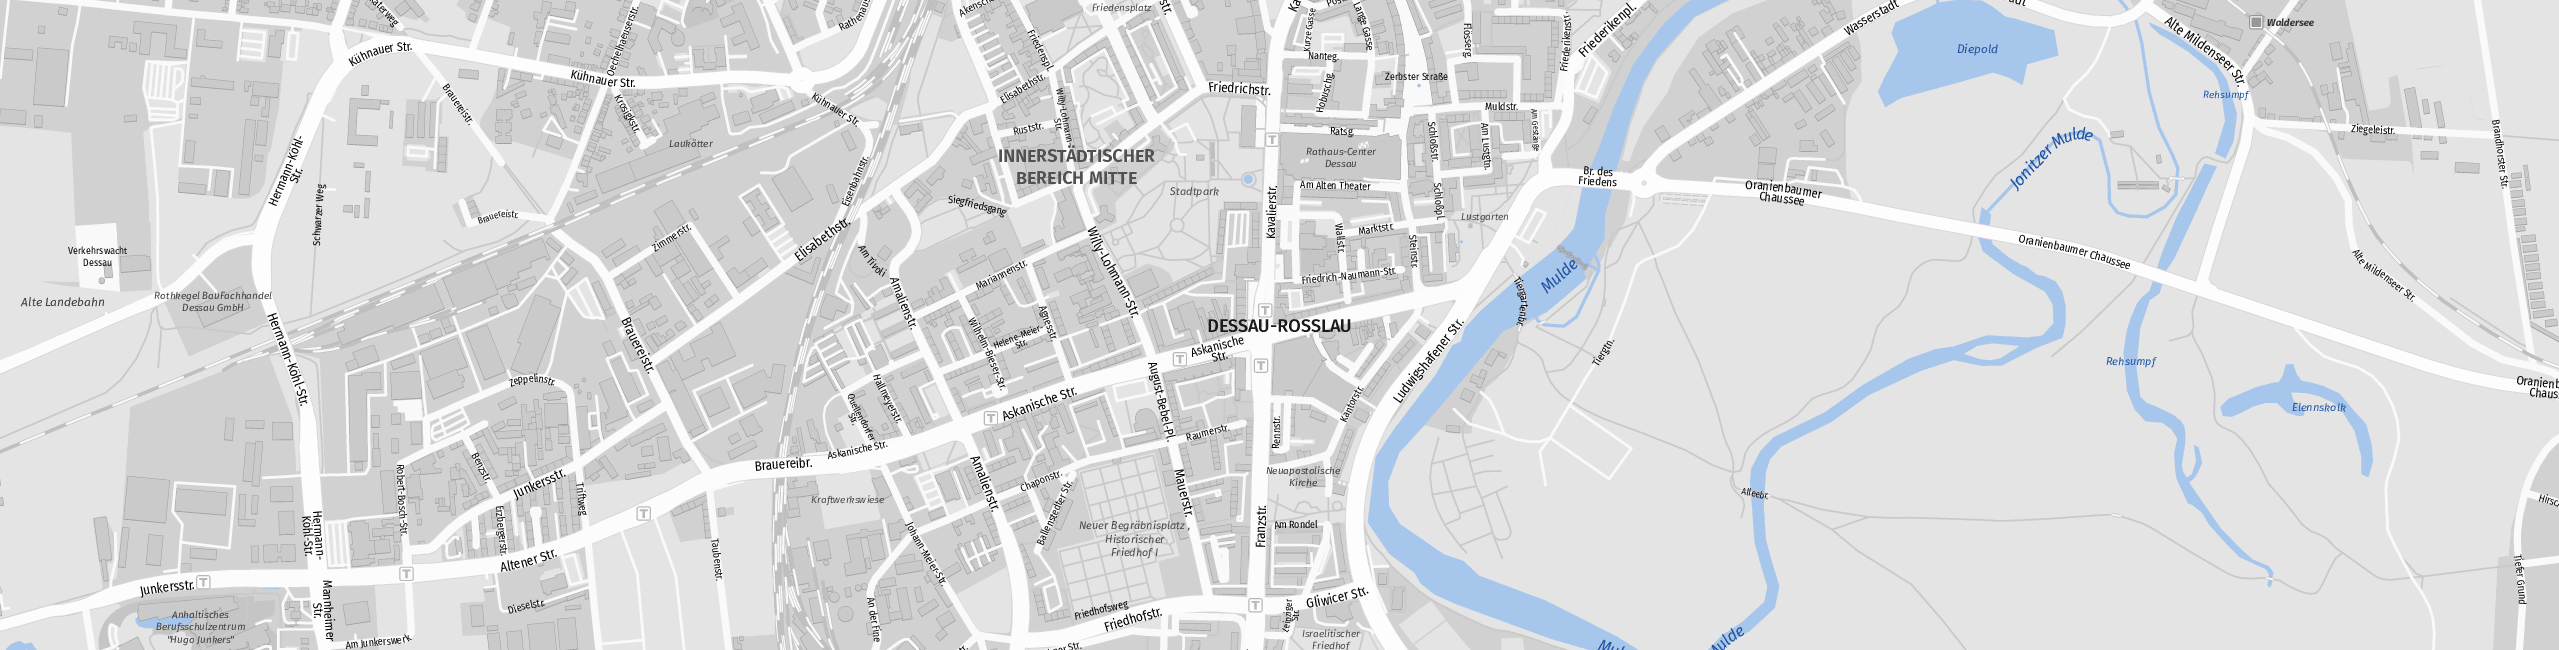 Stadtplan Dessau-Roßlau zum Downloaden.